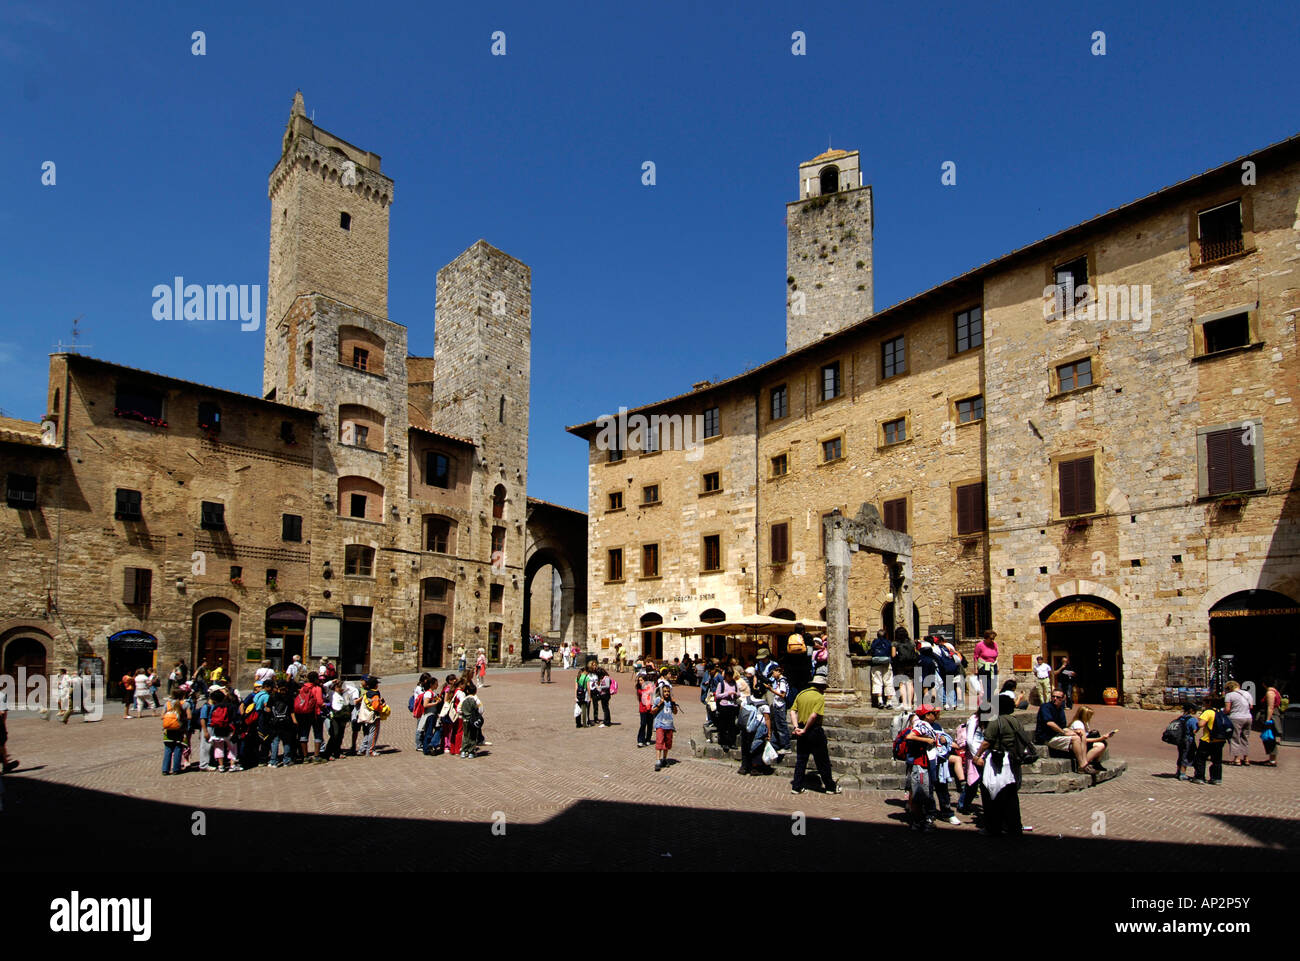 Une petite ville médiévale fortifiée, San Gimignano, Toscane, Italie Banque D'Images